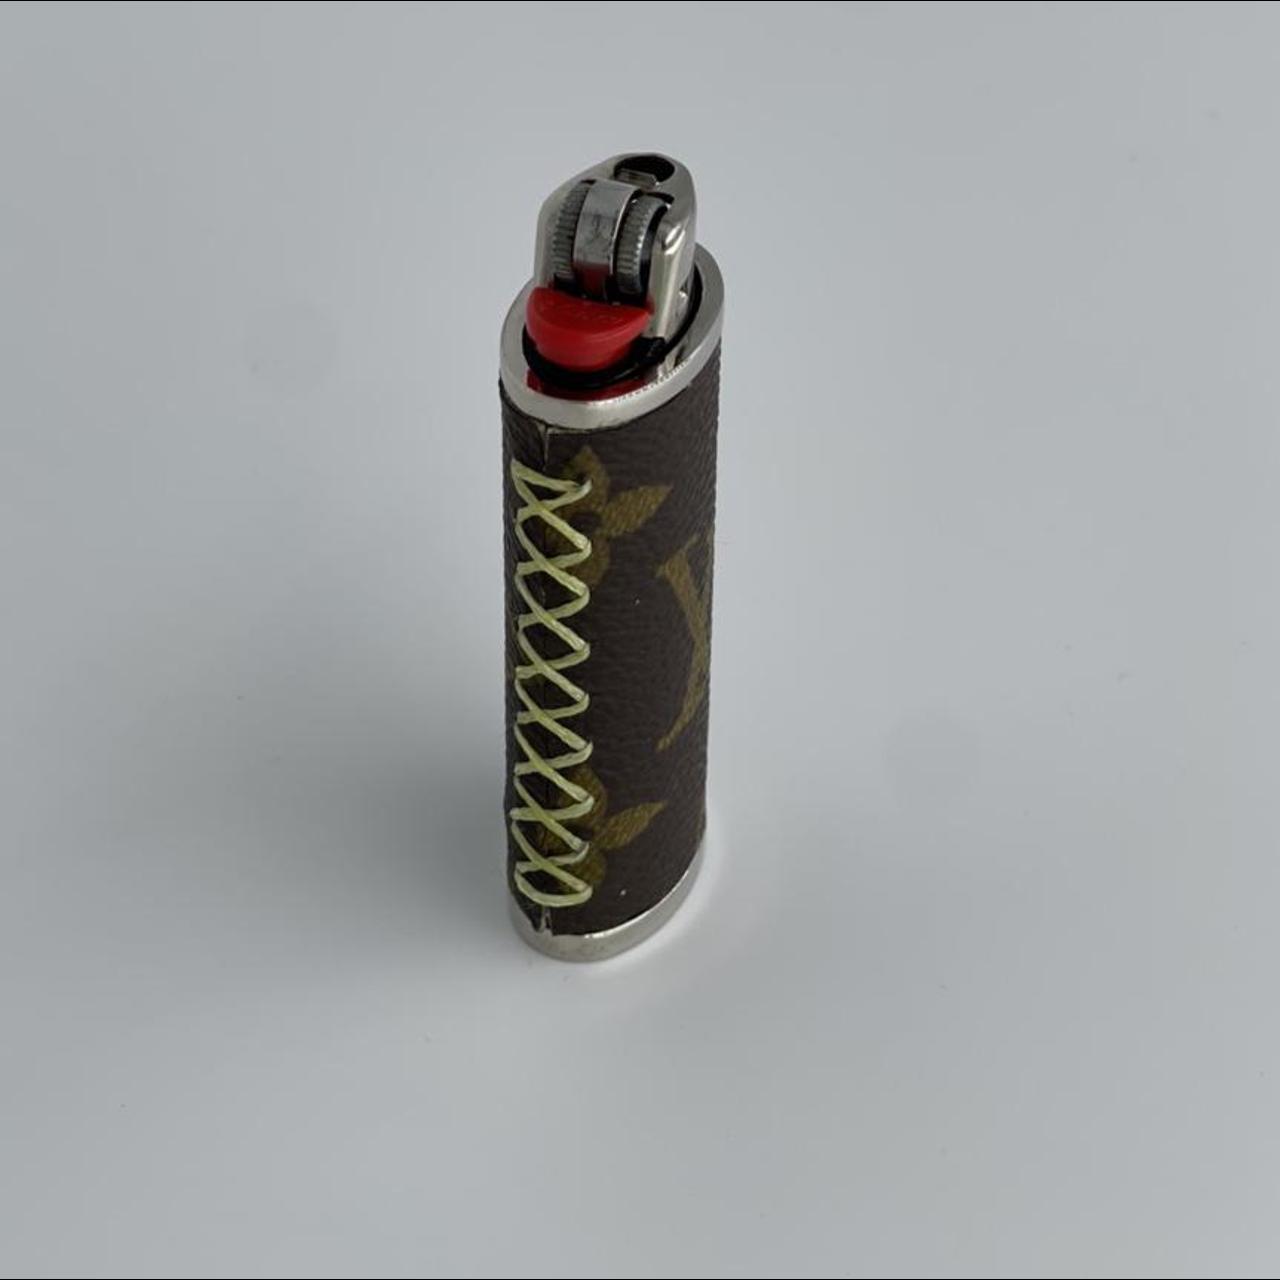 Designer Lighter Case - LV Neon Green